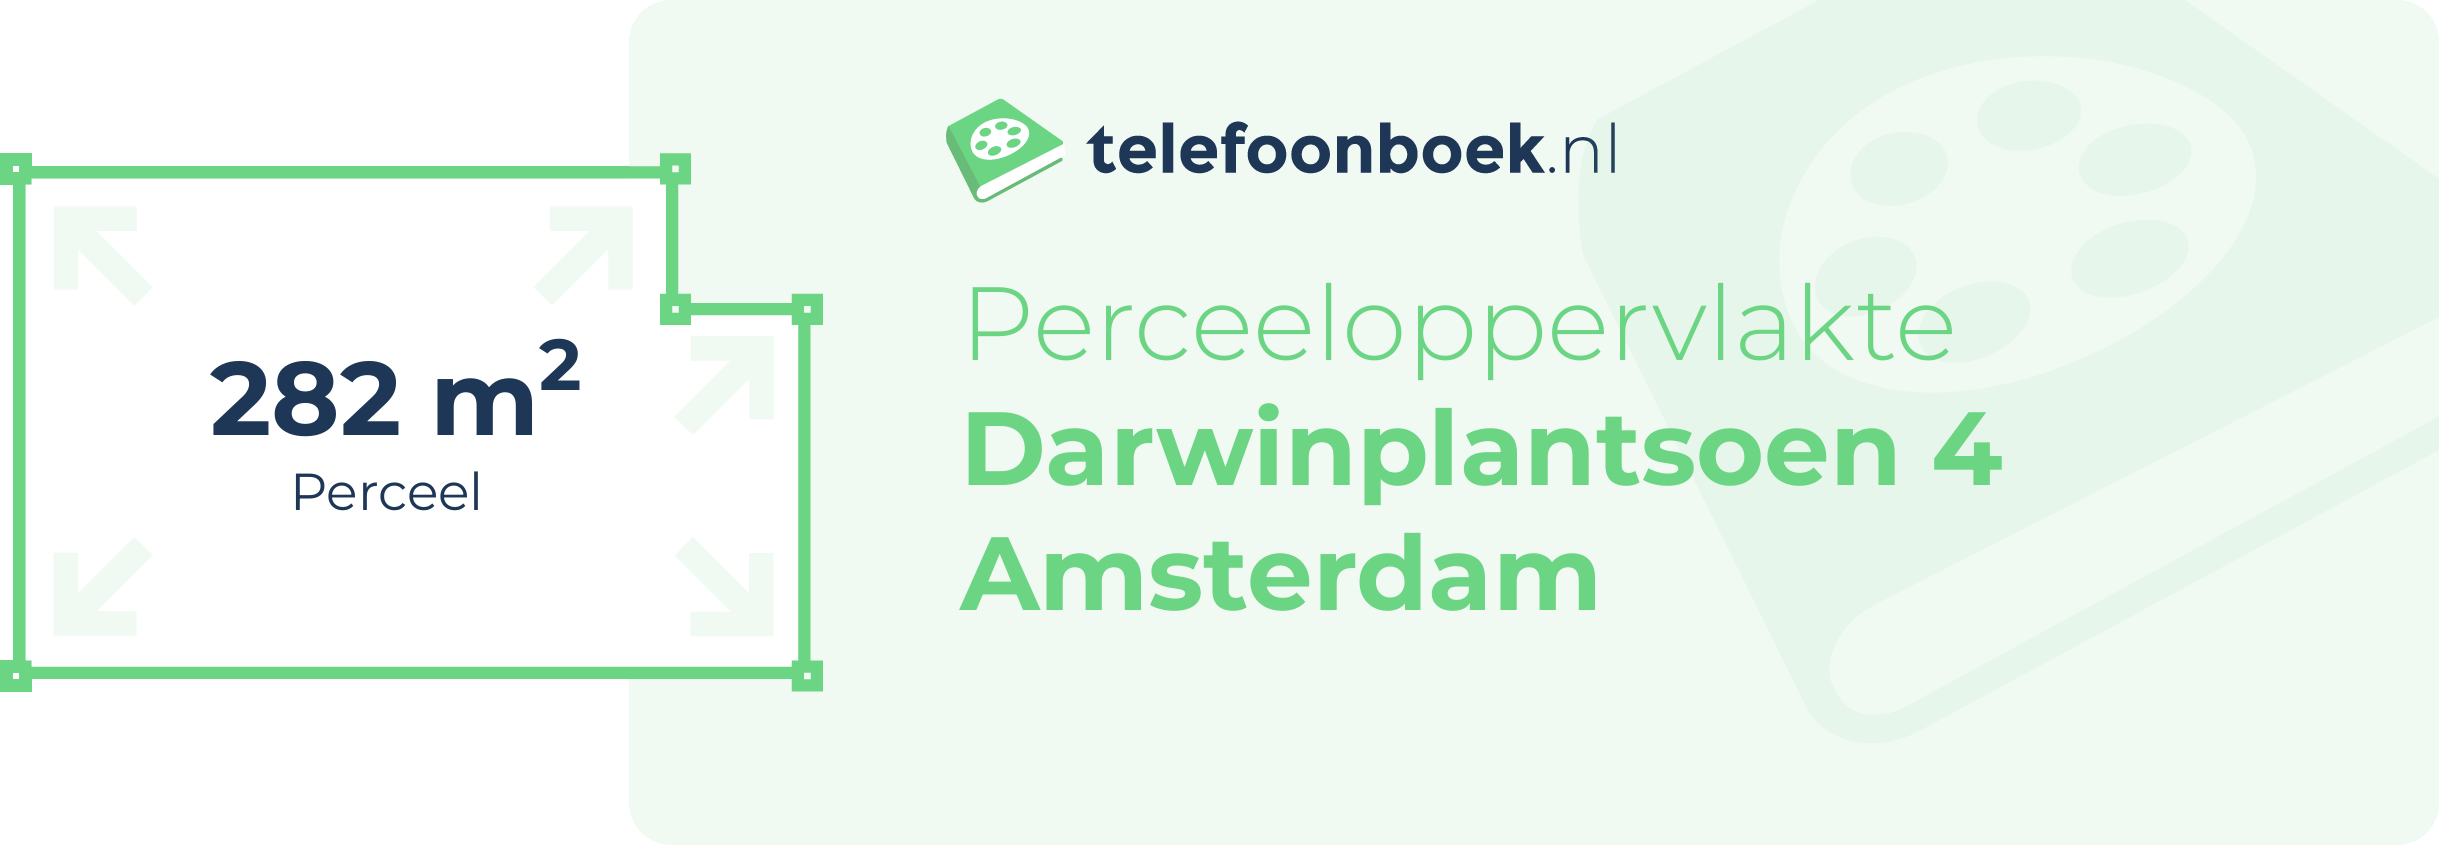 Perceeloppervlakte Darwinplantsoen 4 Amsterdam